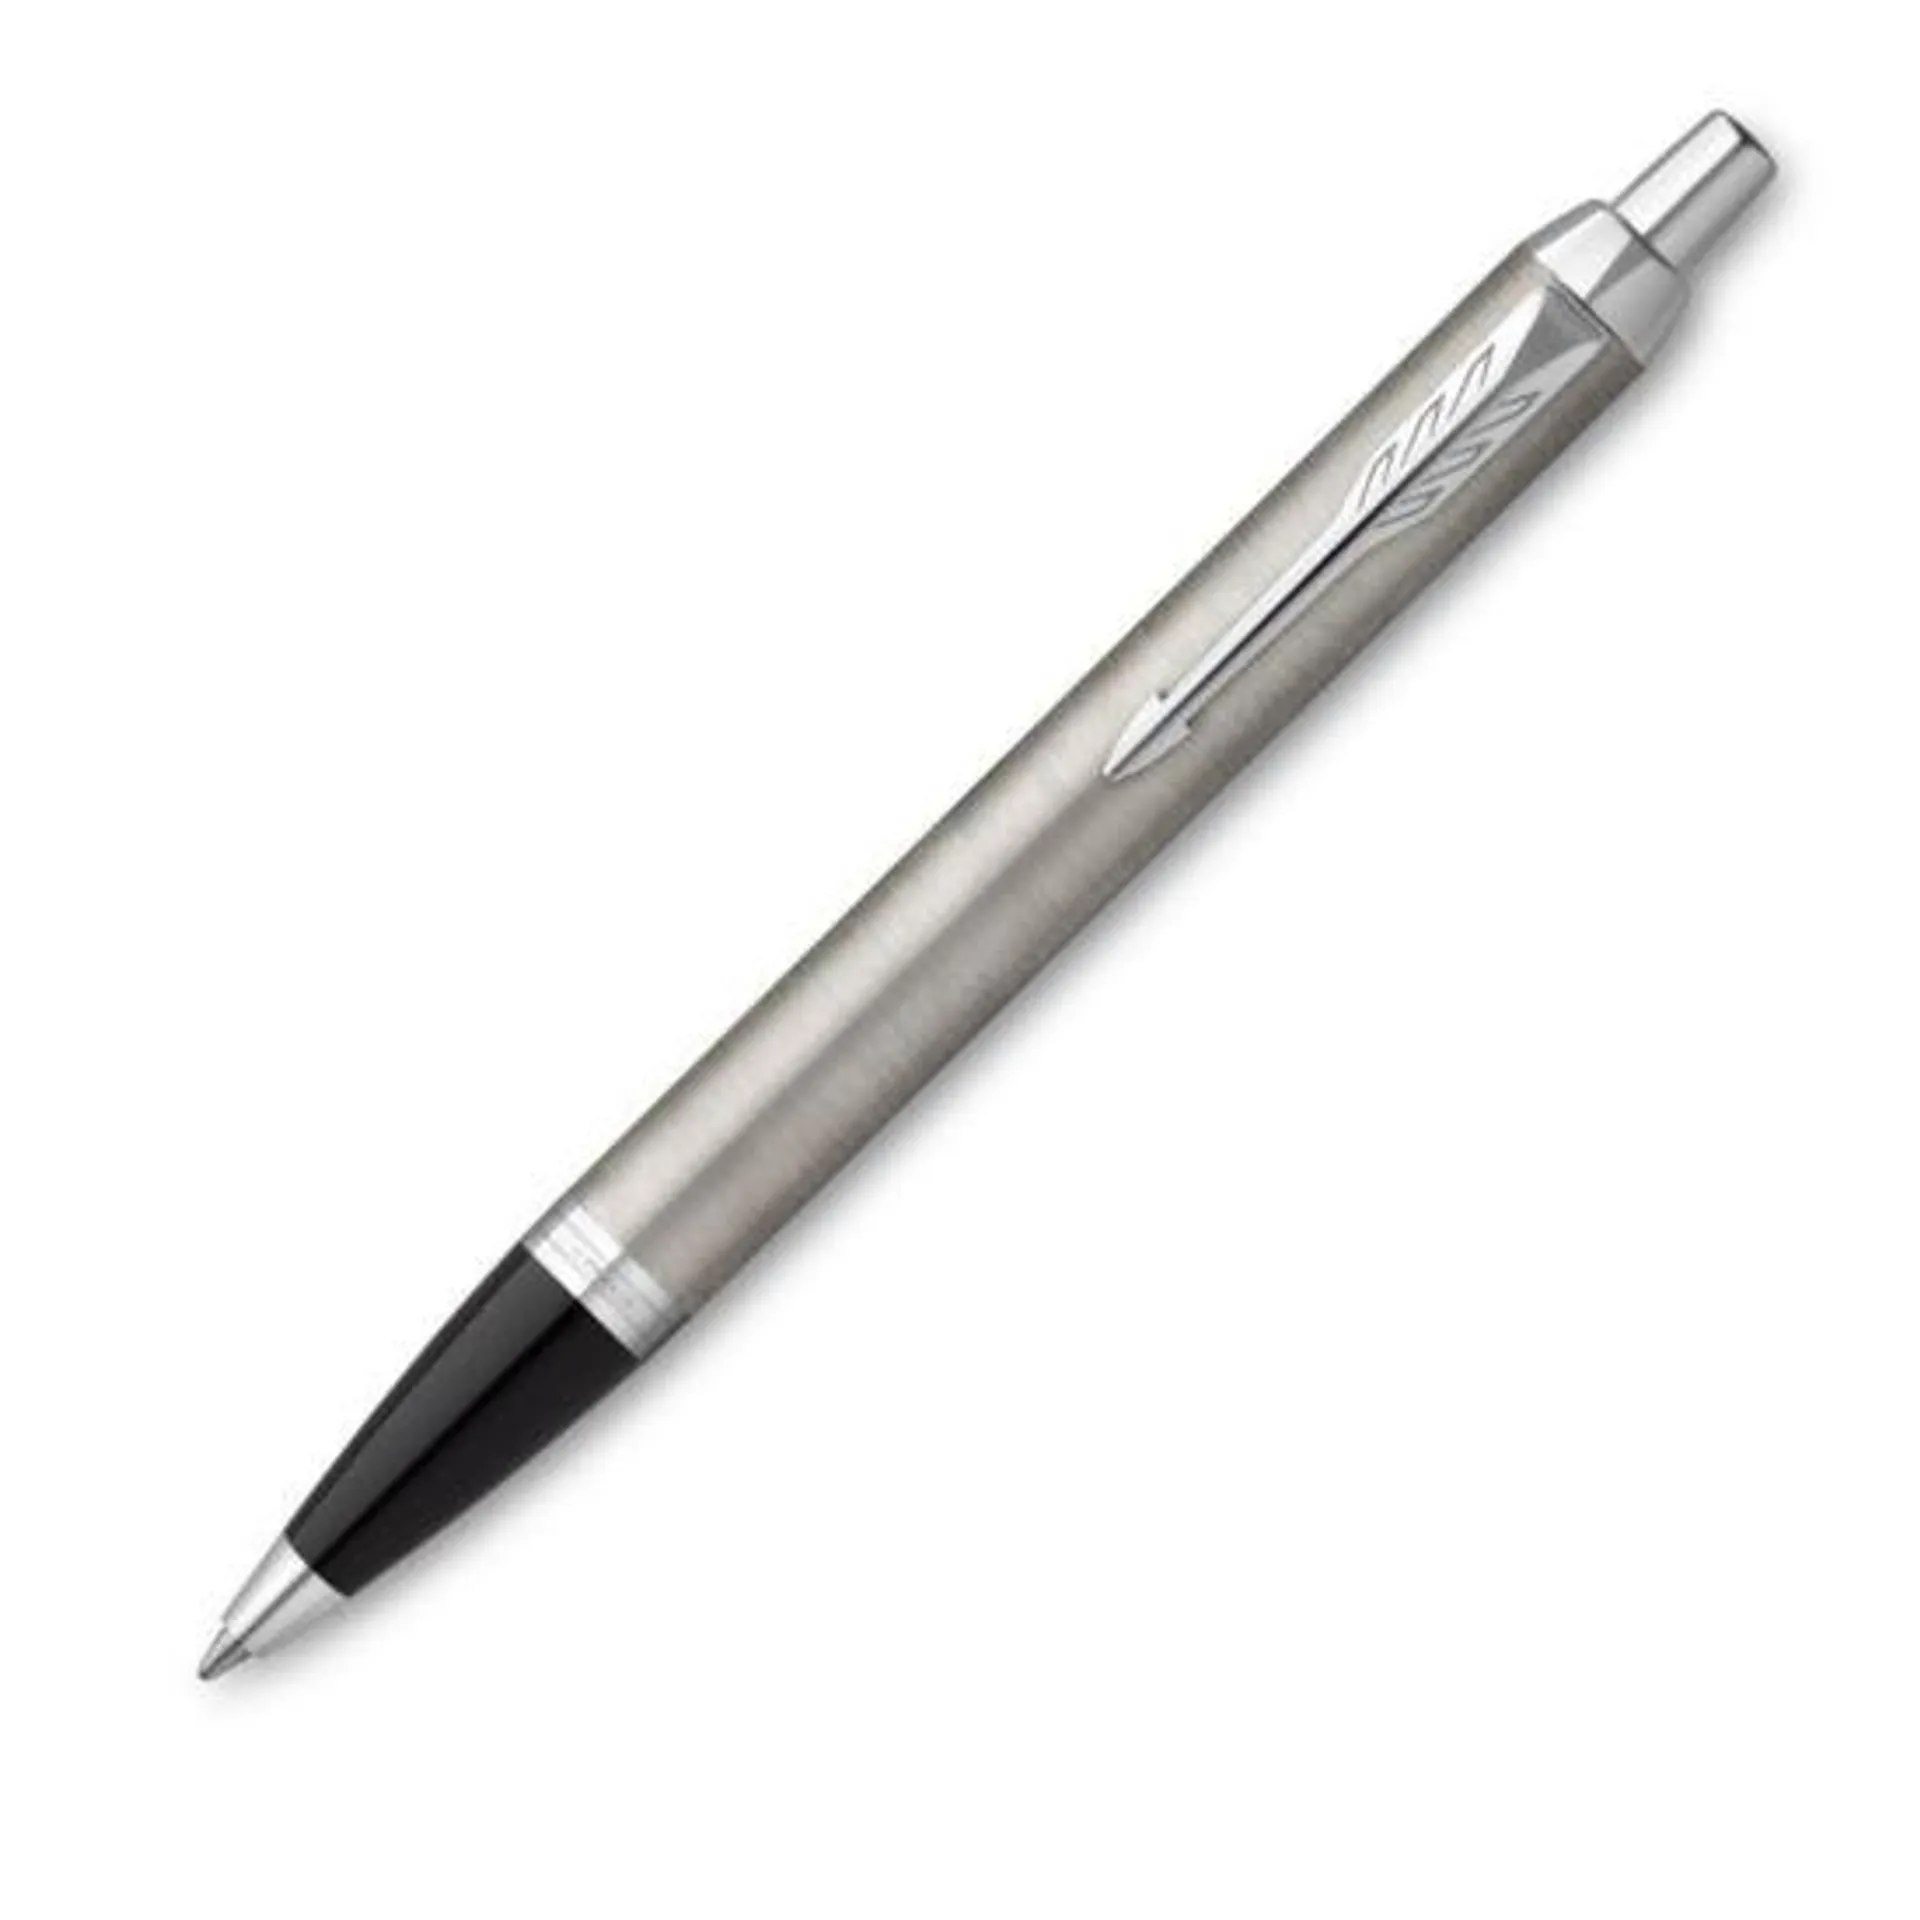 Parker IM Chrome Trim Stainless Steel Ballpoint Pen